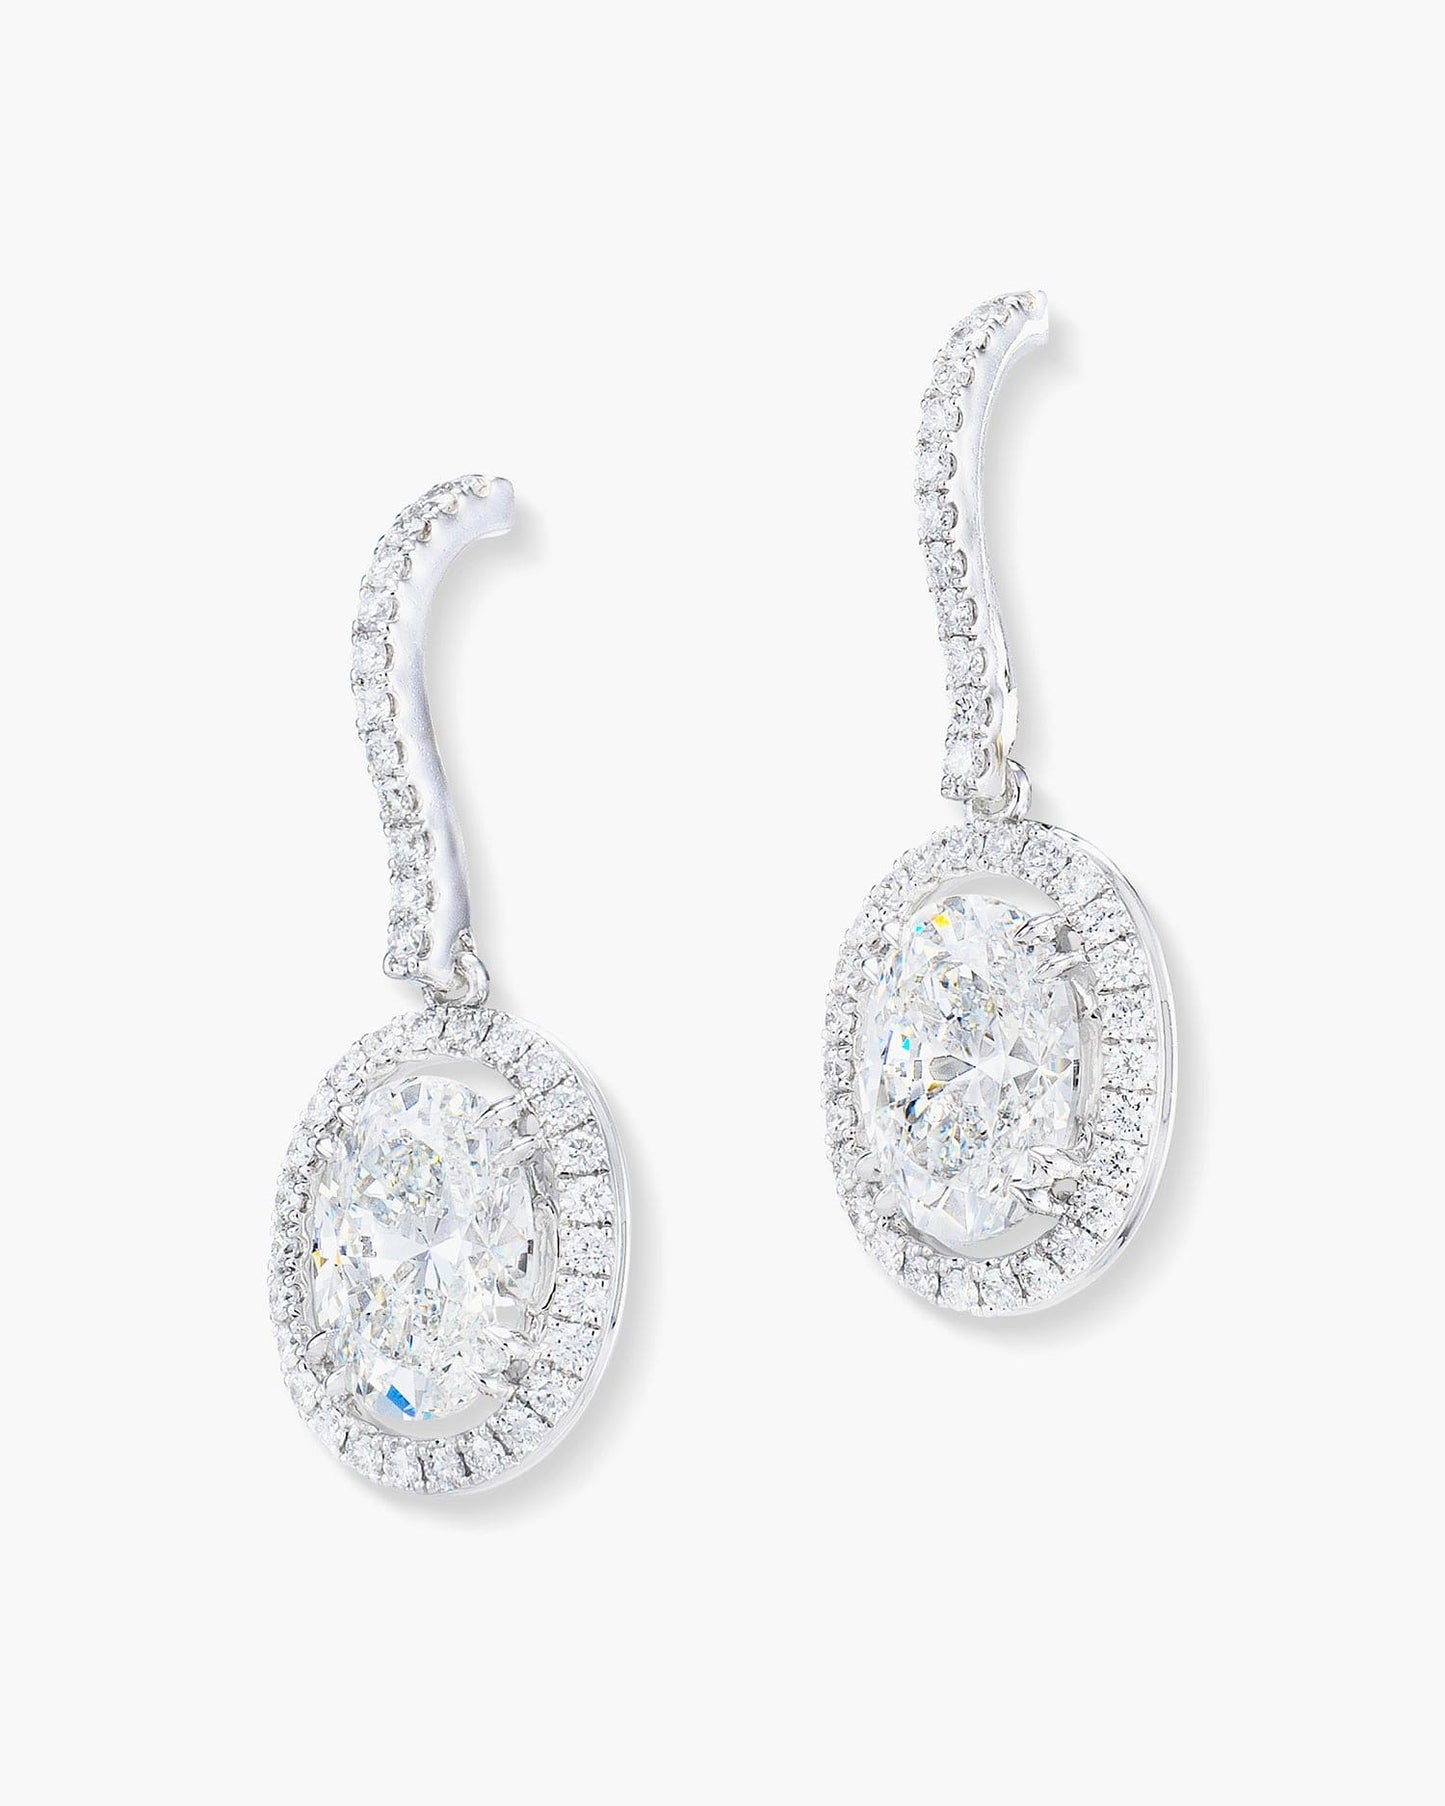 2.05 carat Oval Shape Diamond Earrings